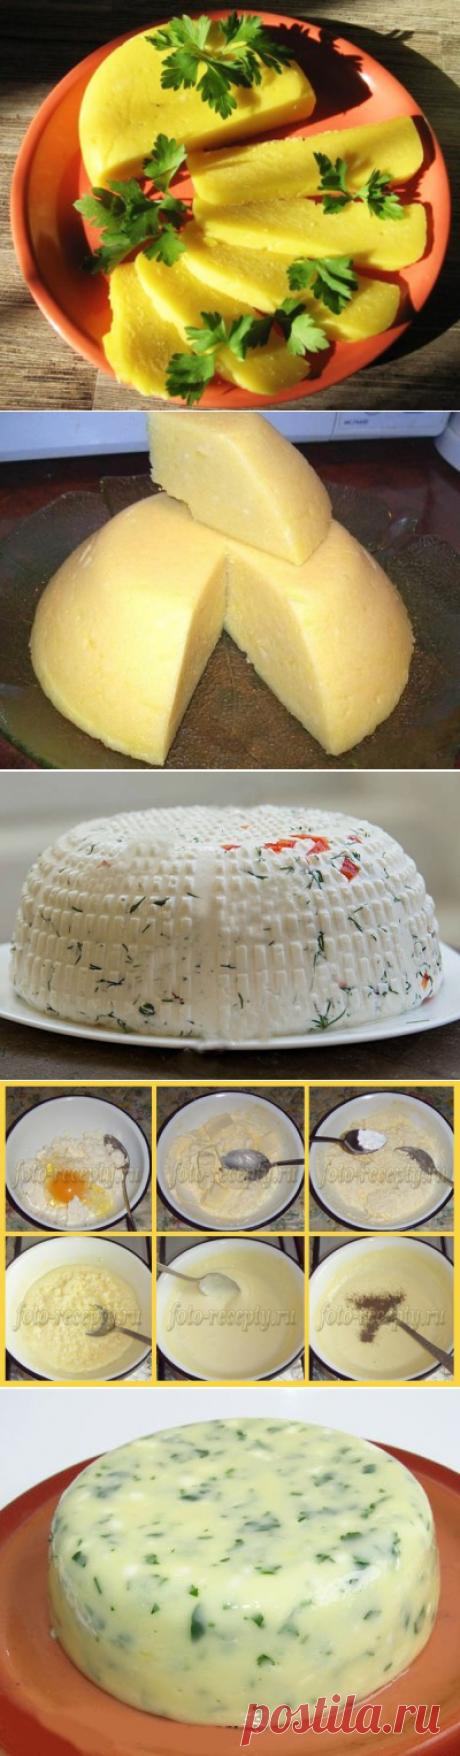 Рецепты сыров ОЧЕНЬ МНОГО